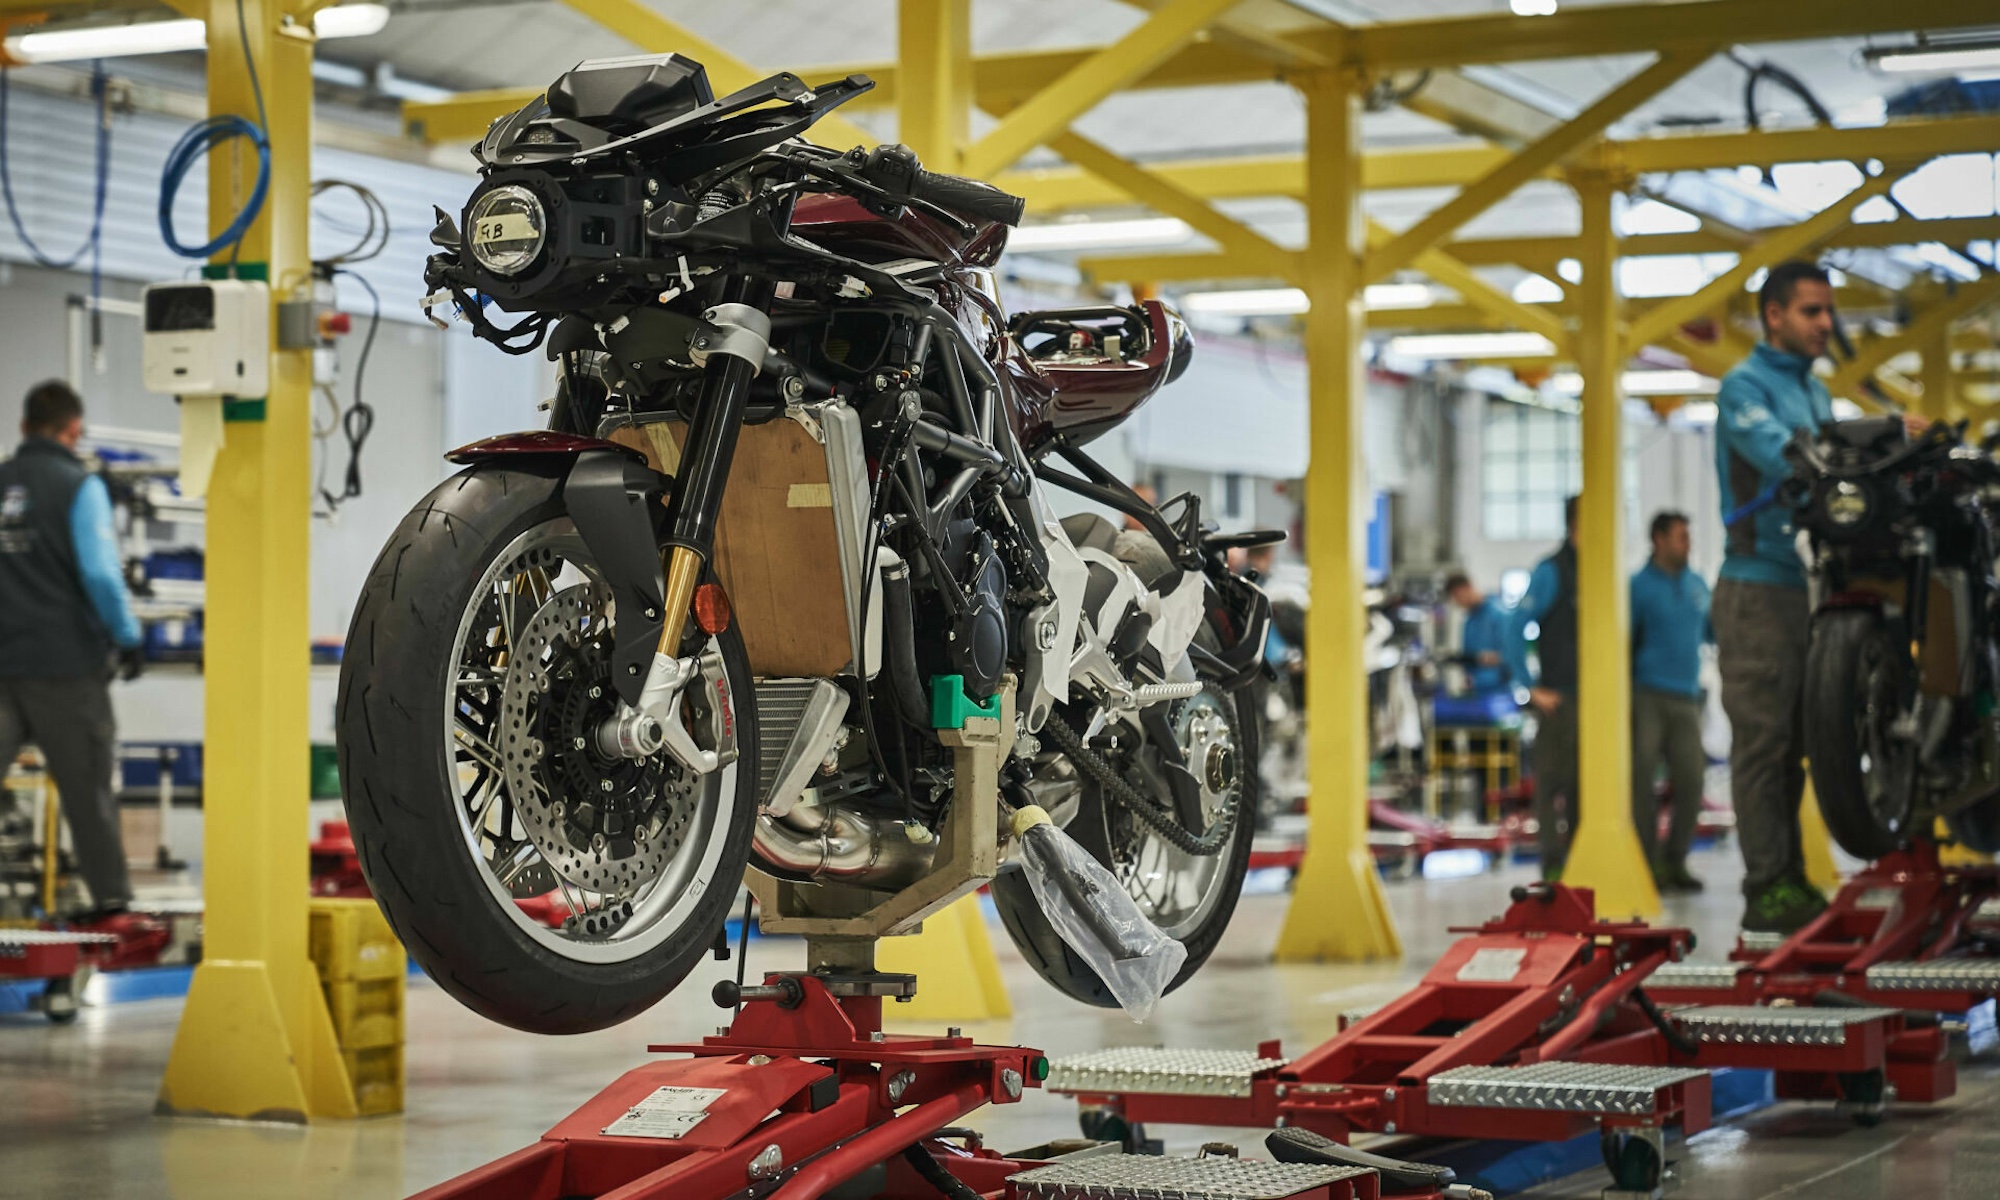 Vue d'une chaîne de production de motos dans une usine.